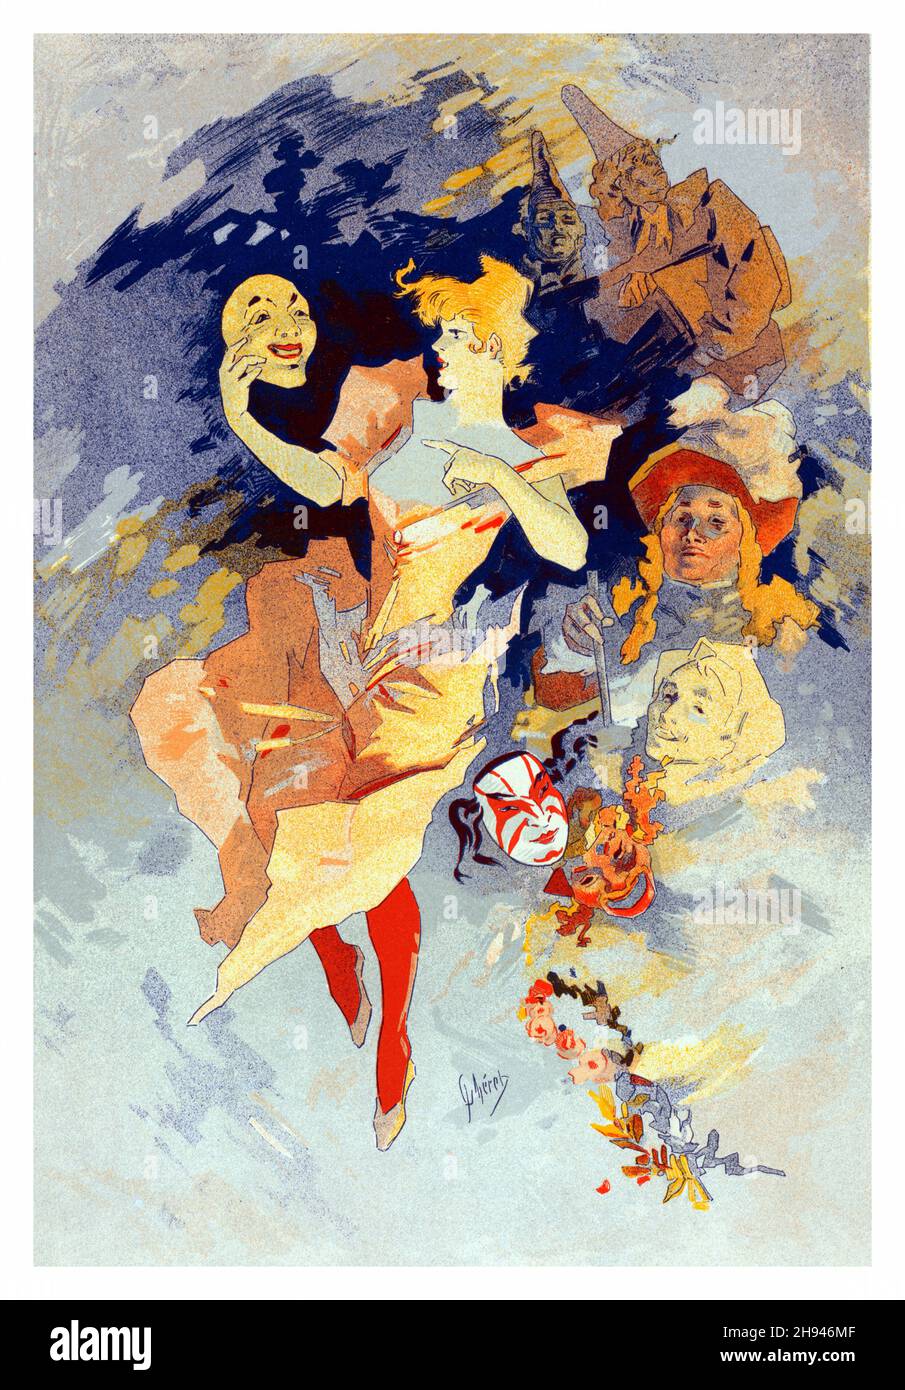 Les maîtres de l'affiche vol 5, plate 205 - Poster art by Jules Chéret (1836-1932). French. Stock Photo